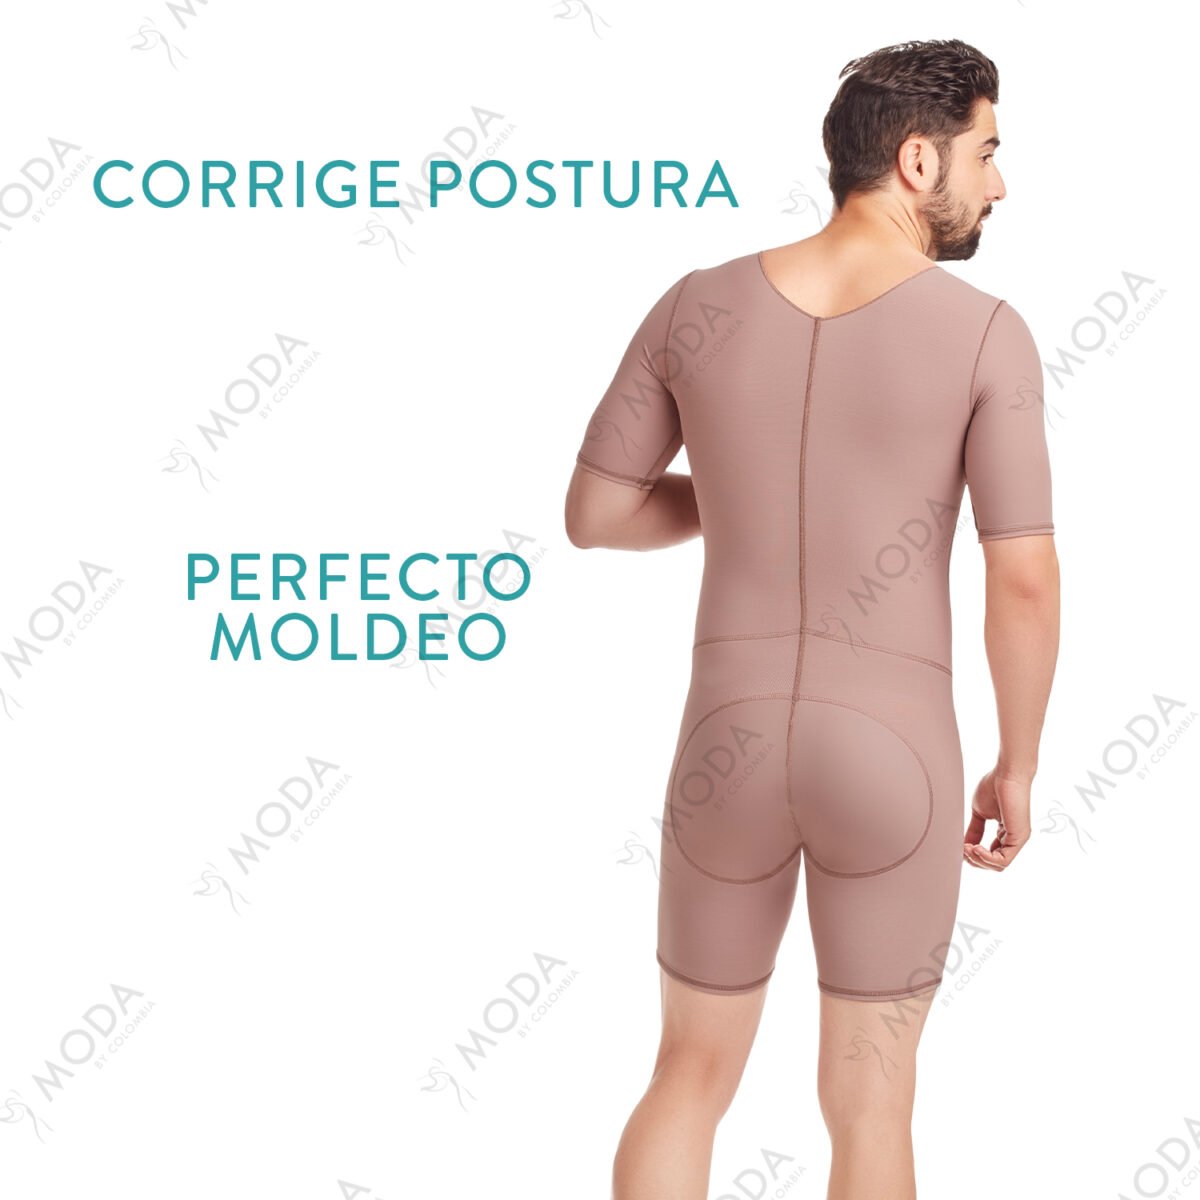 Faja entera masculina postquirúrgica para hombre cuenta con cierre central, estilo media pierna y cubrimiento total de espalda para mayor comodidad.